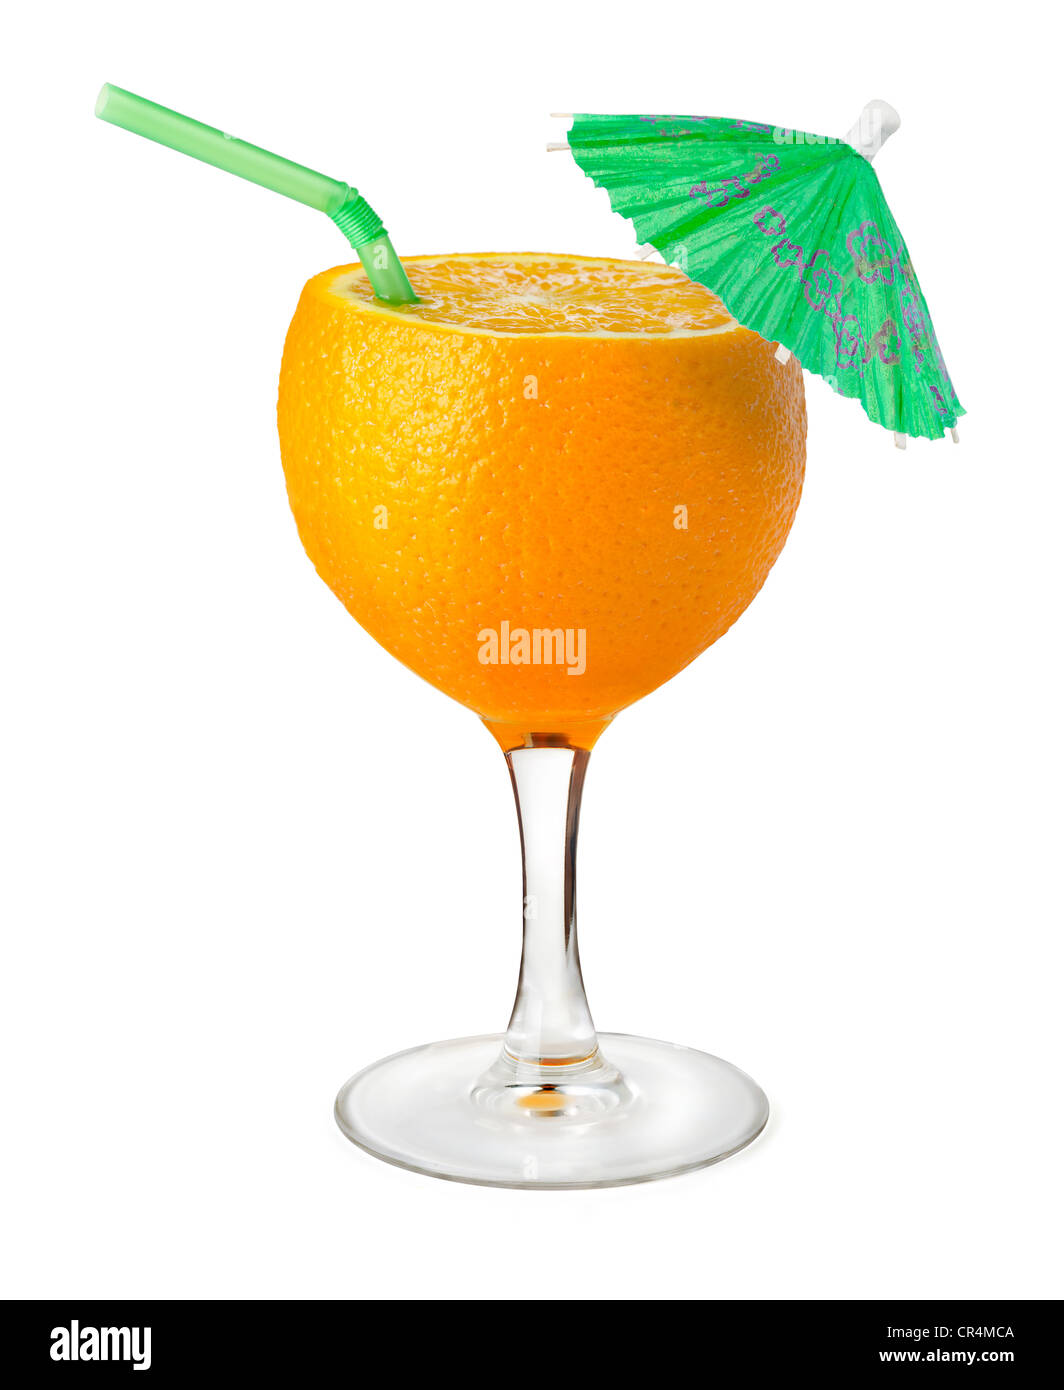 Fotomontage Weinglas und Orange - Konzept für gesunde Ernährung Stockfoto